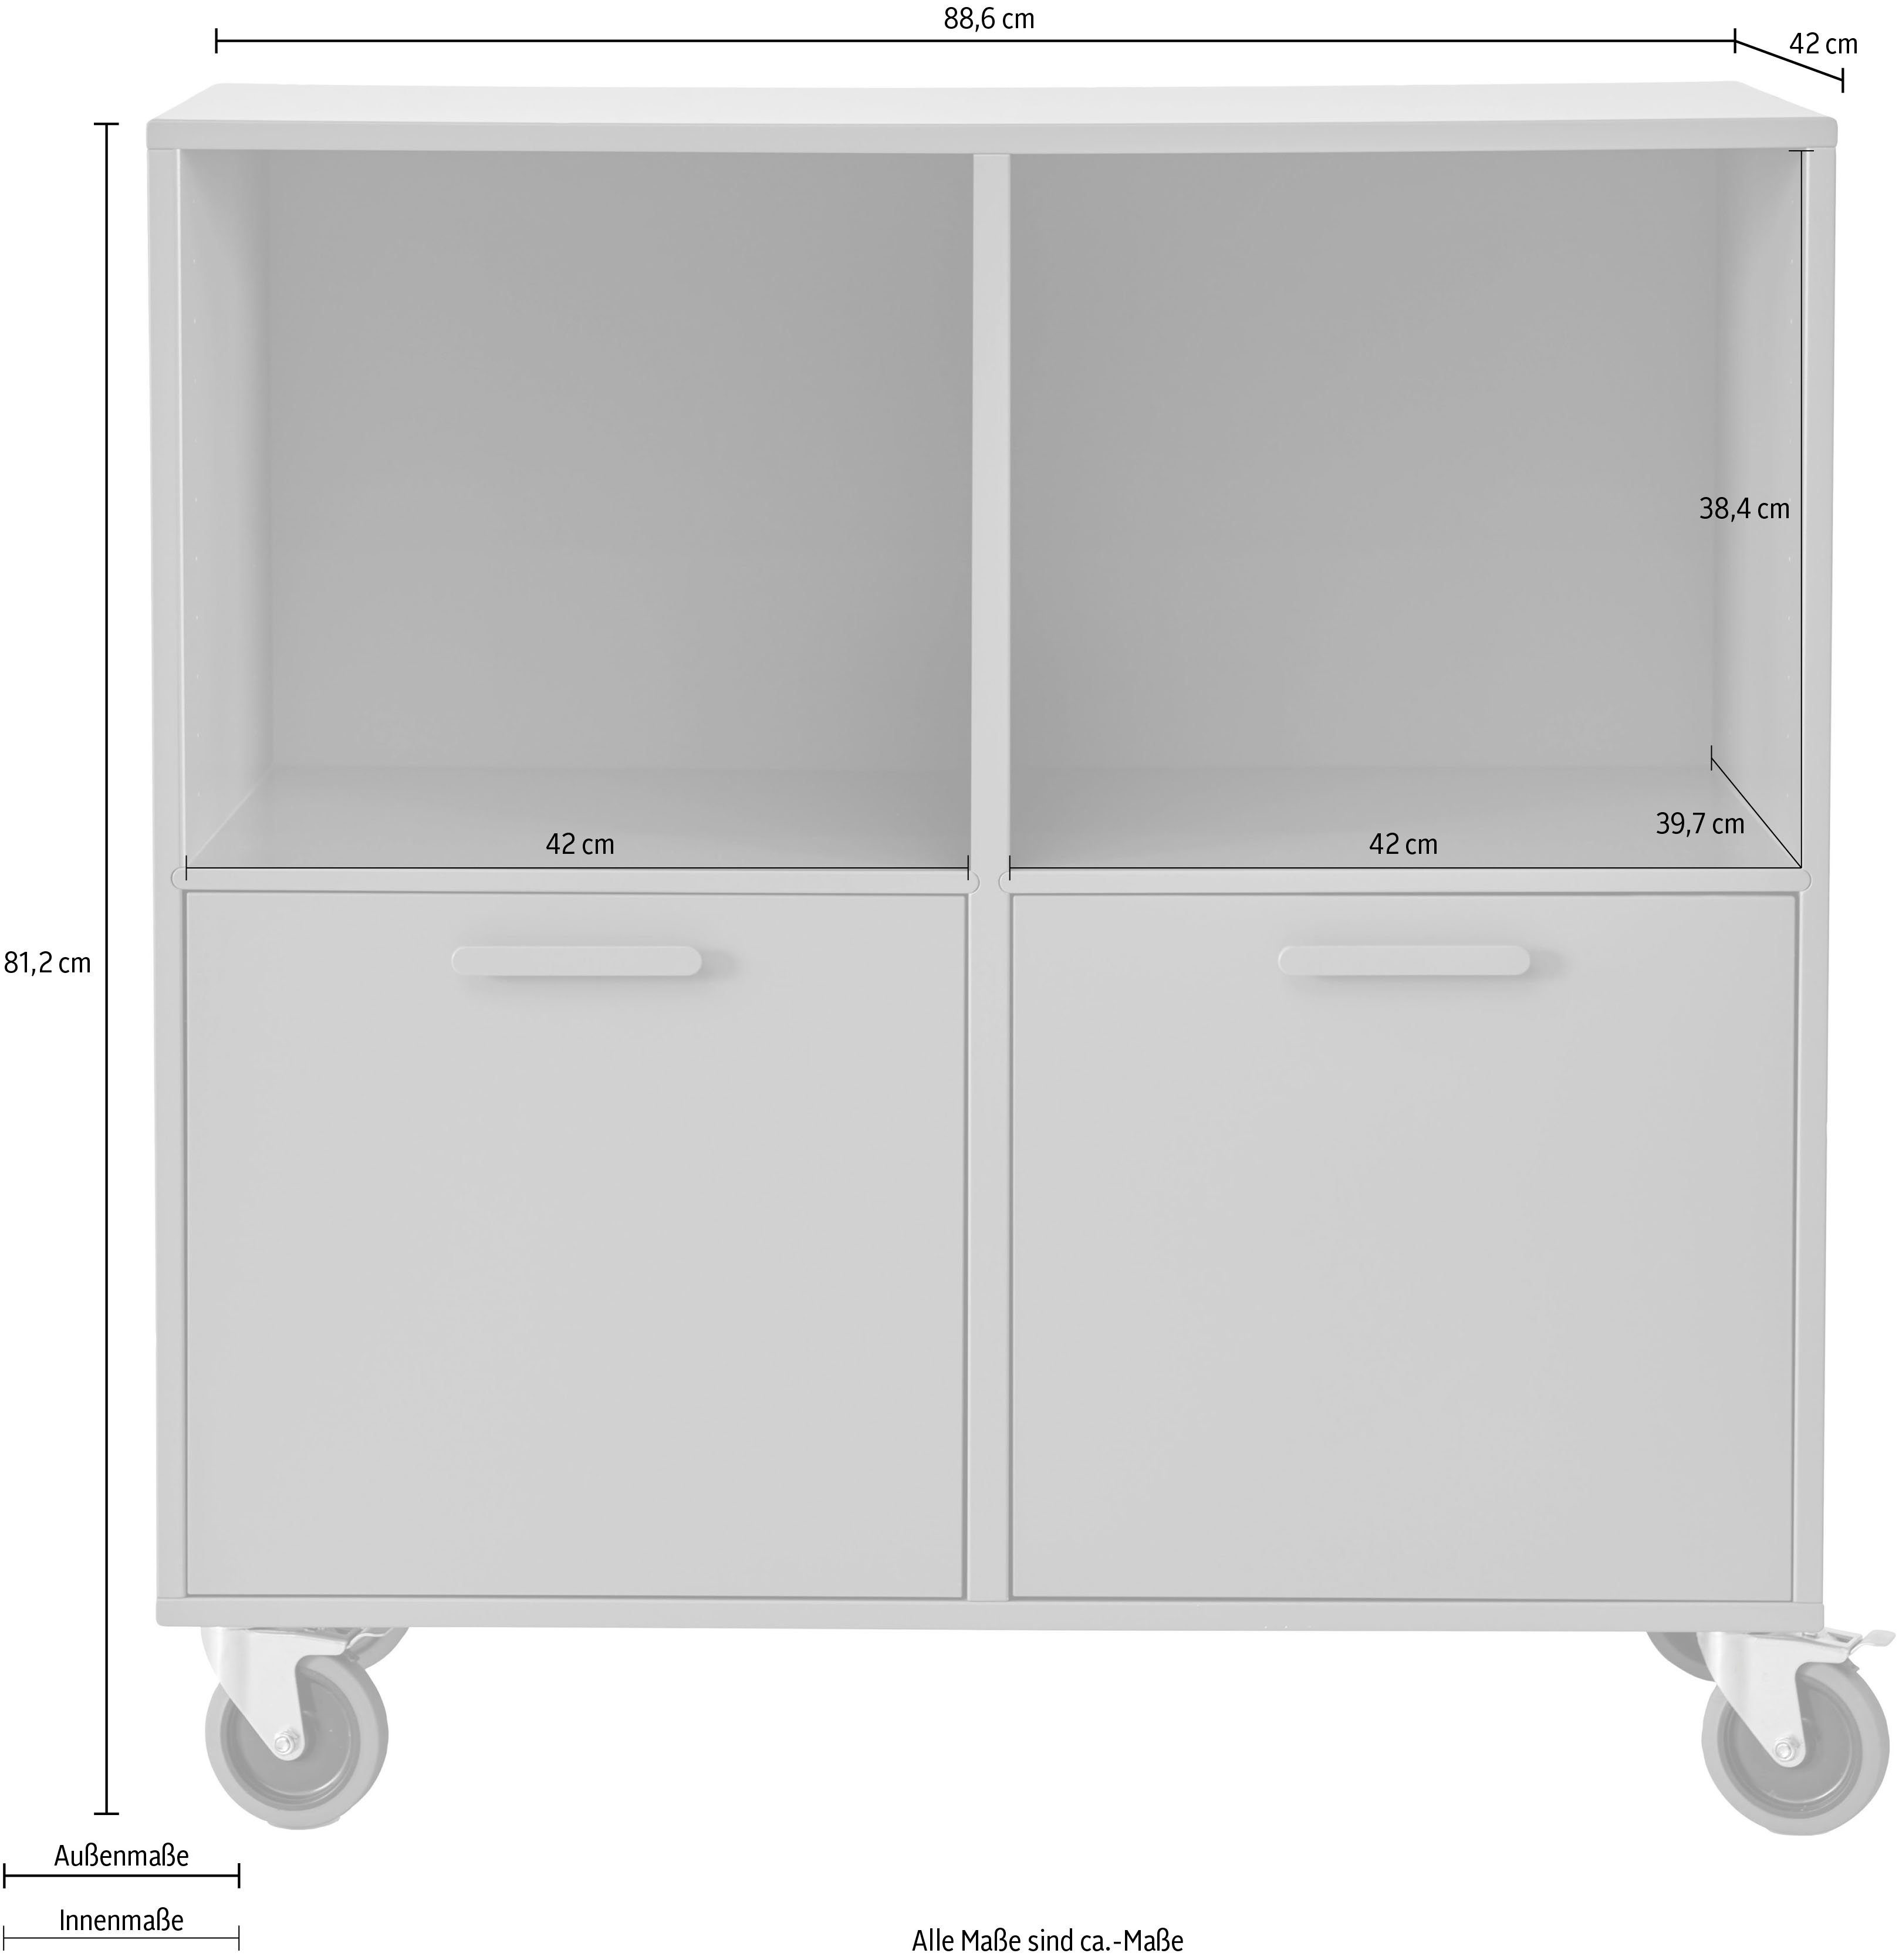 Hammel Furniture 88,6 Terrakotta Rollen, by Keep cm, mit 2 | Möbelserie flexible Breite Terrakotta und Türen Regal Hammel